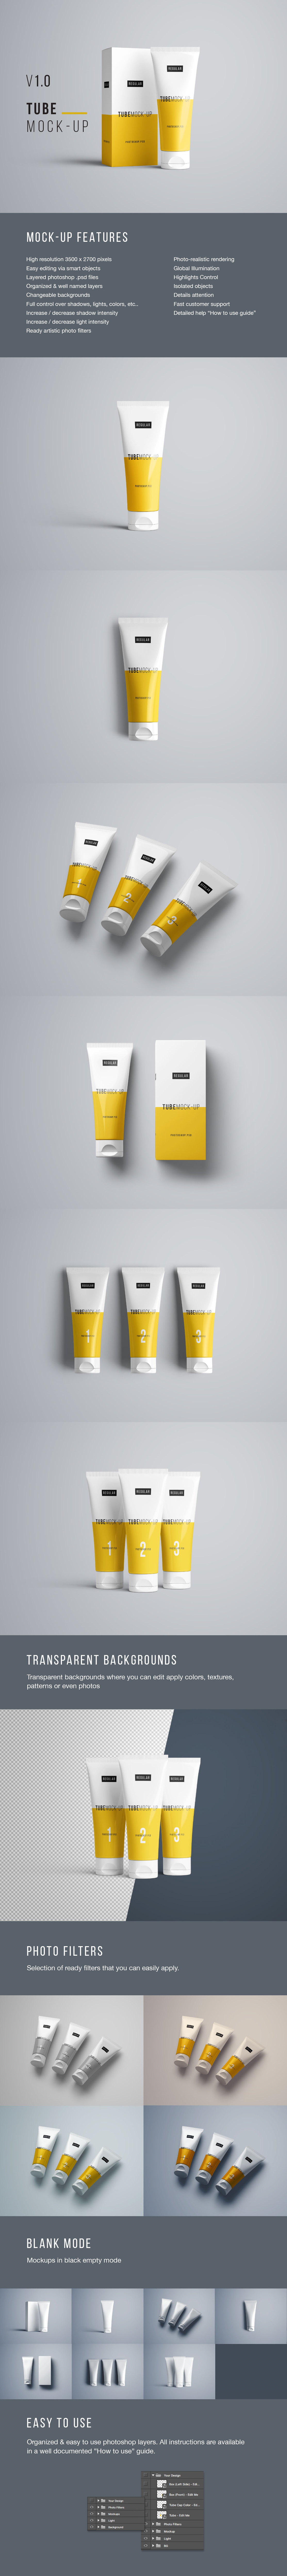 化妆品/护肤品包装软管外观设计PSD模板 Tube Mockups (Standard Size – PSD)插图